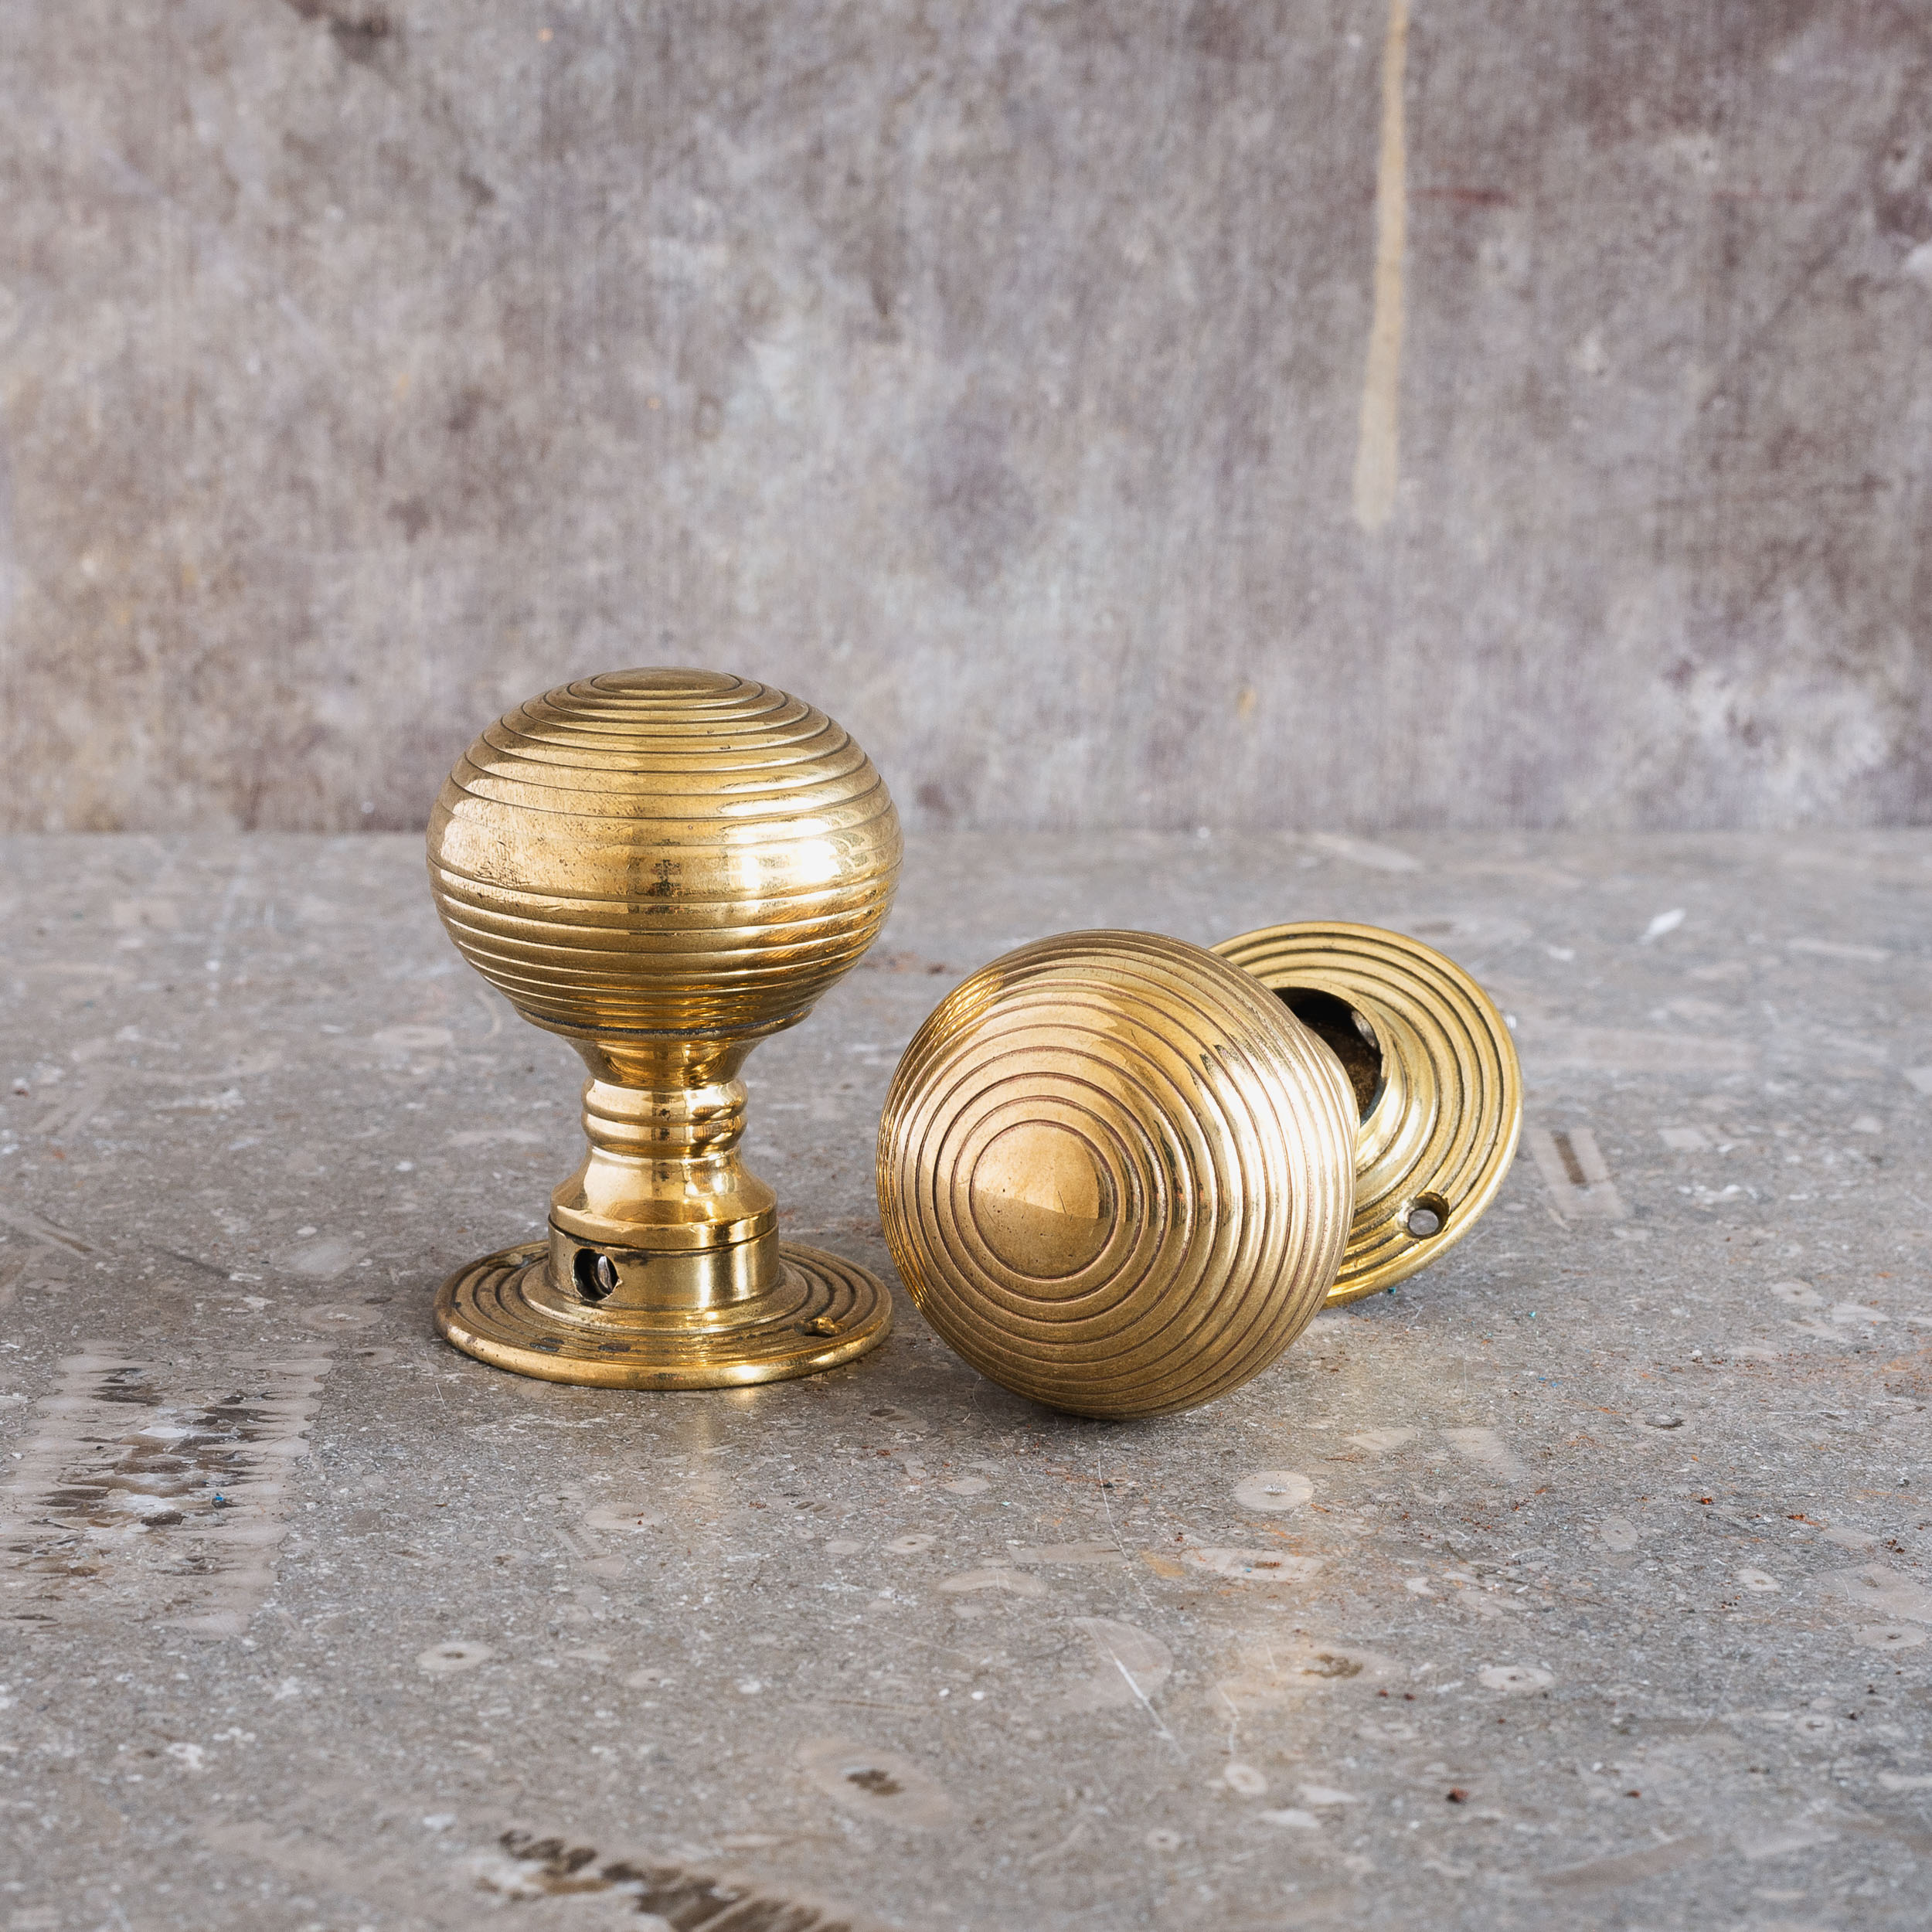 Brass Beehive - Large (pair) - Victorian Door Knobs